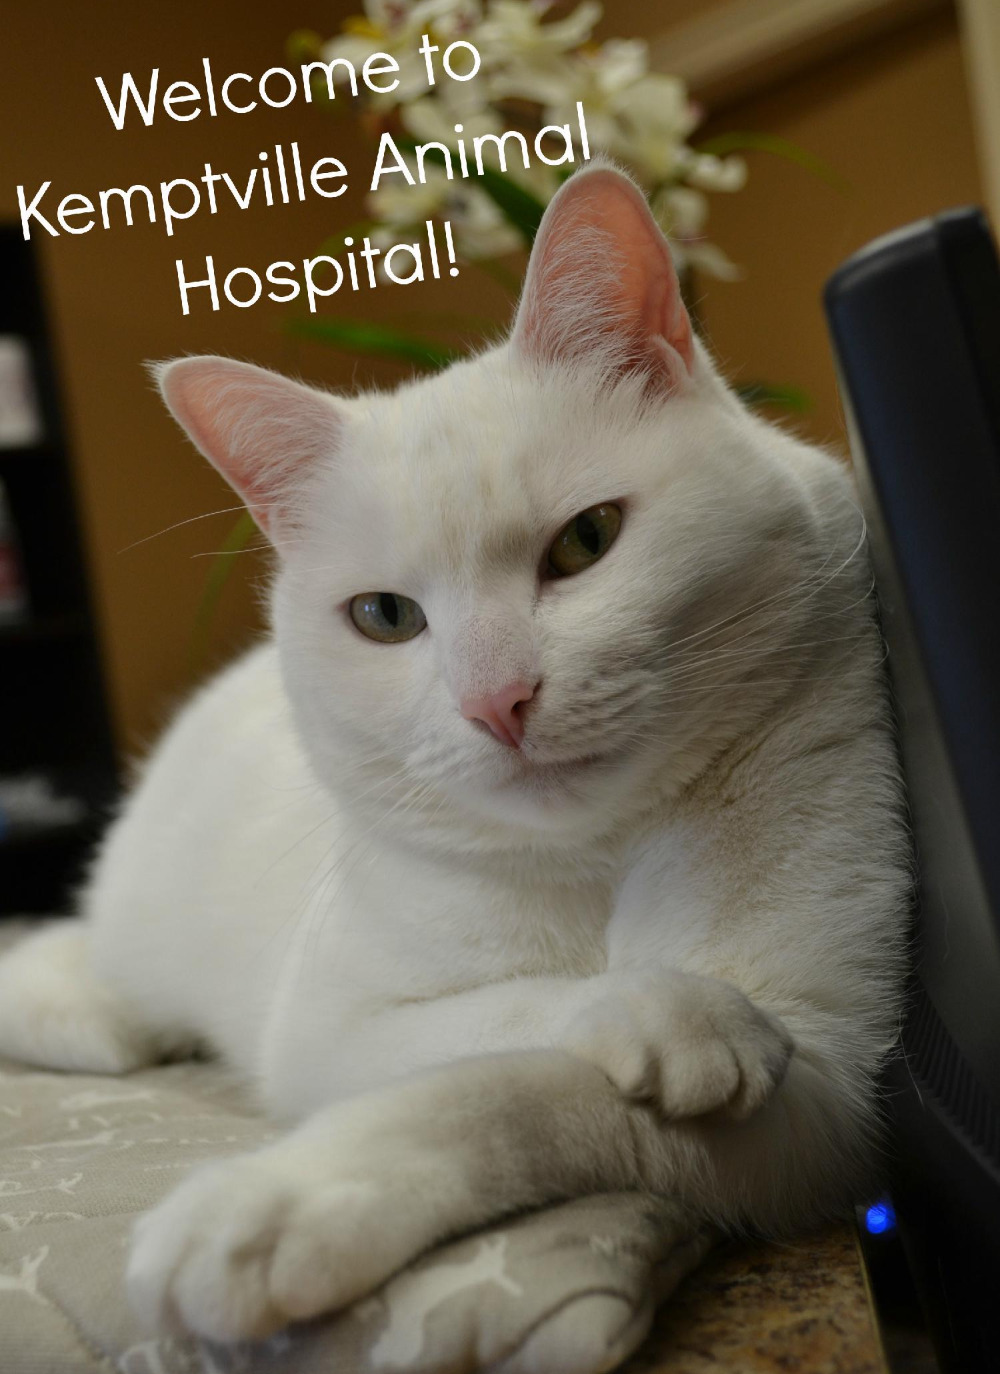 Kemptville Animal Hospital | 5-4 Industrial Rd, Kemptville, ON K0G 1J0 | +1 613-258-2030